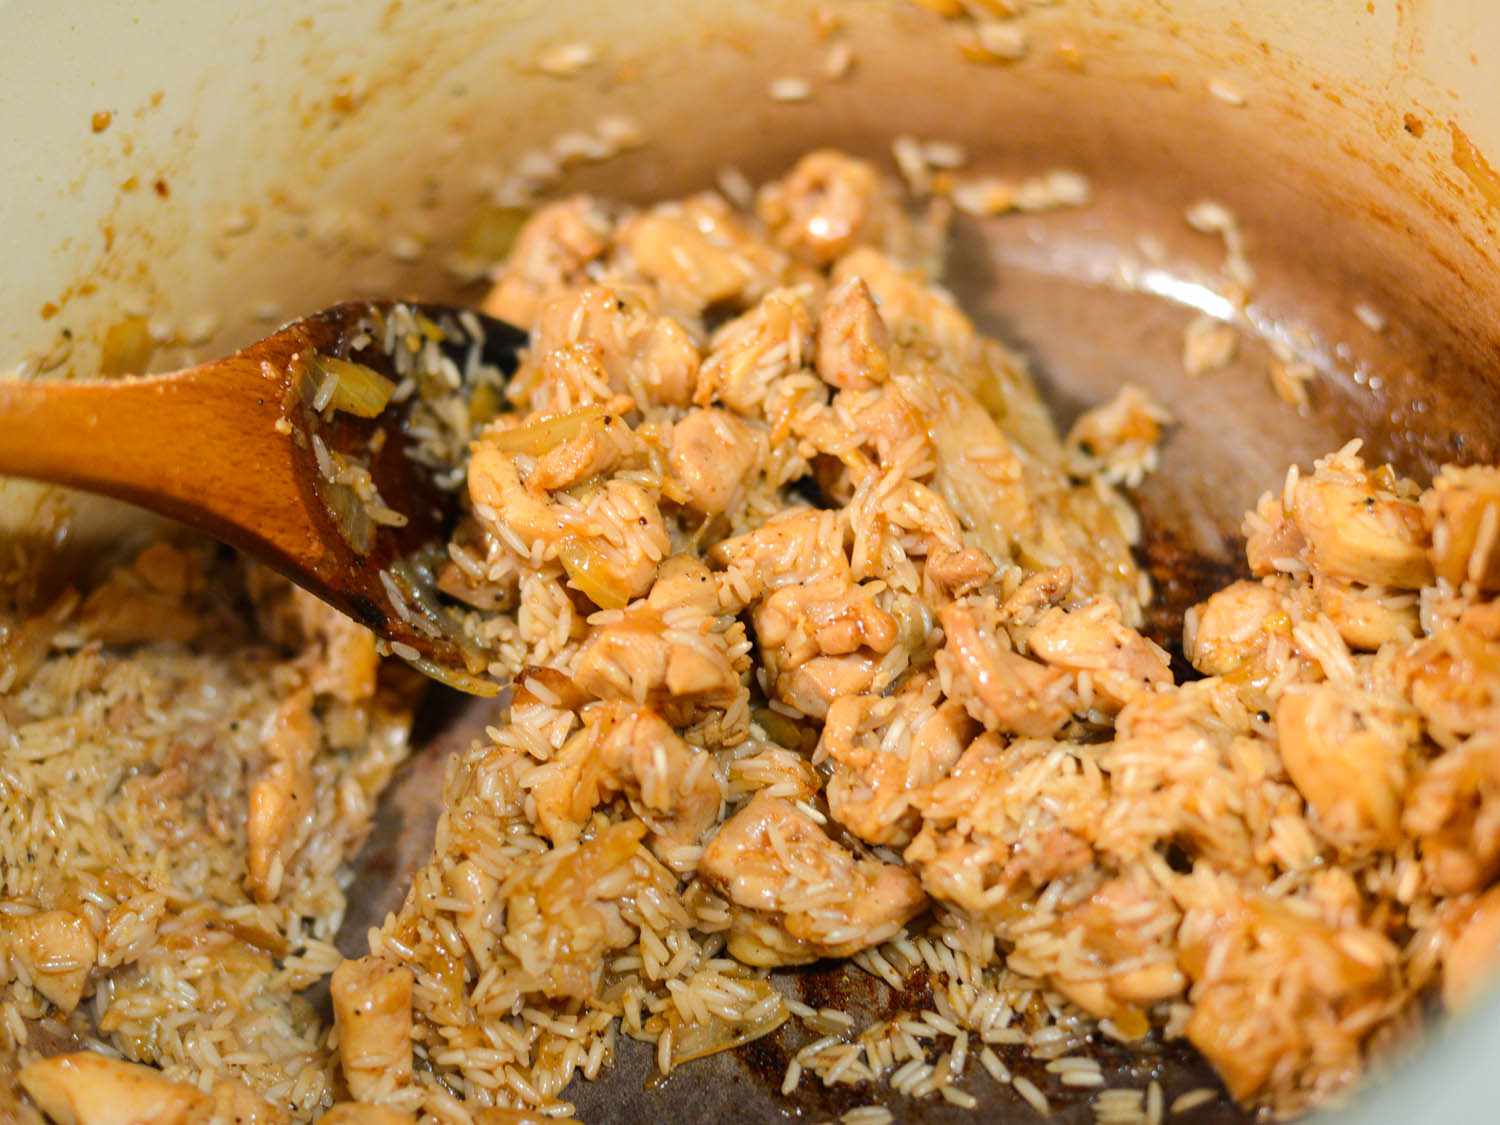 米饭被搅拌到鸡肉洋葱混合物中。